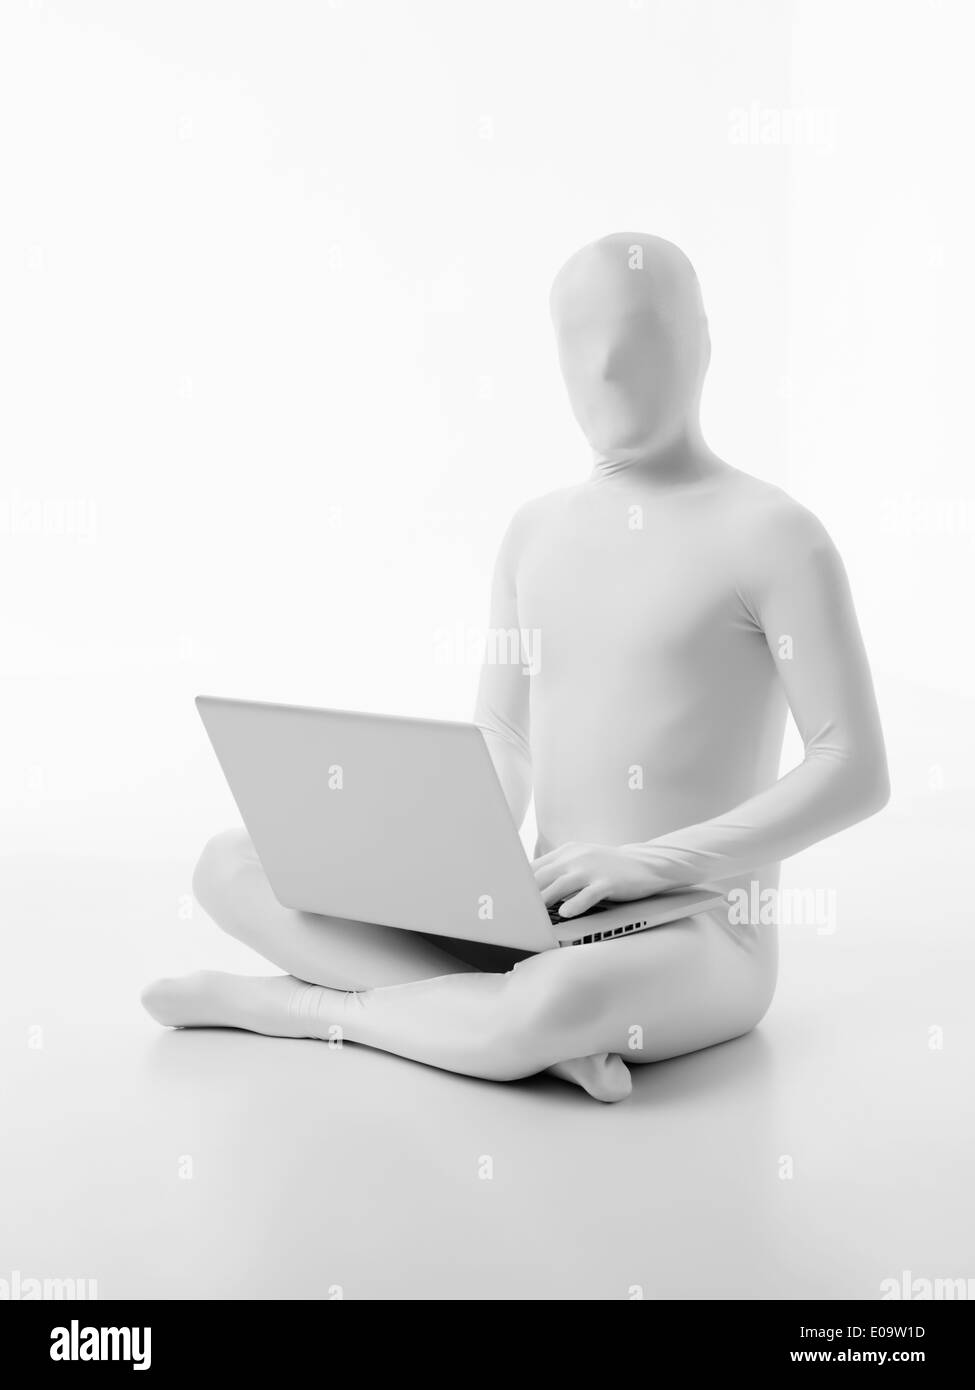 L'uomo senza volto vestito di bianco seduto con un computer portatile in giro la digitazione Foto Stock